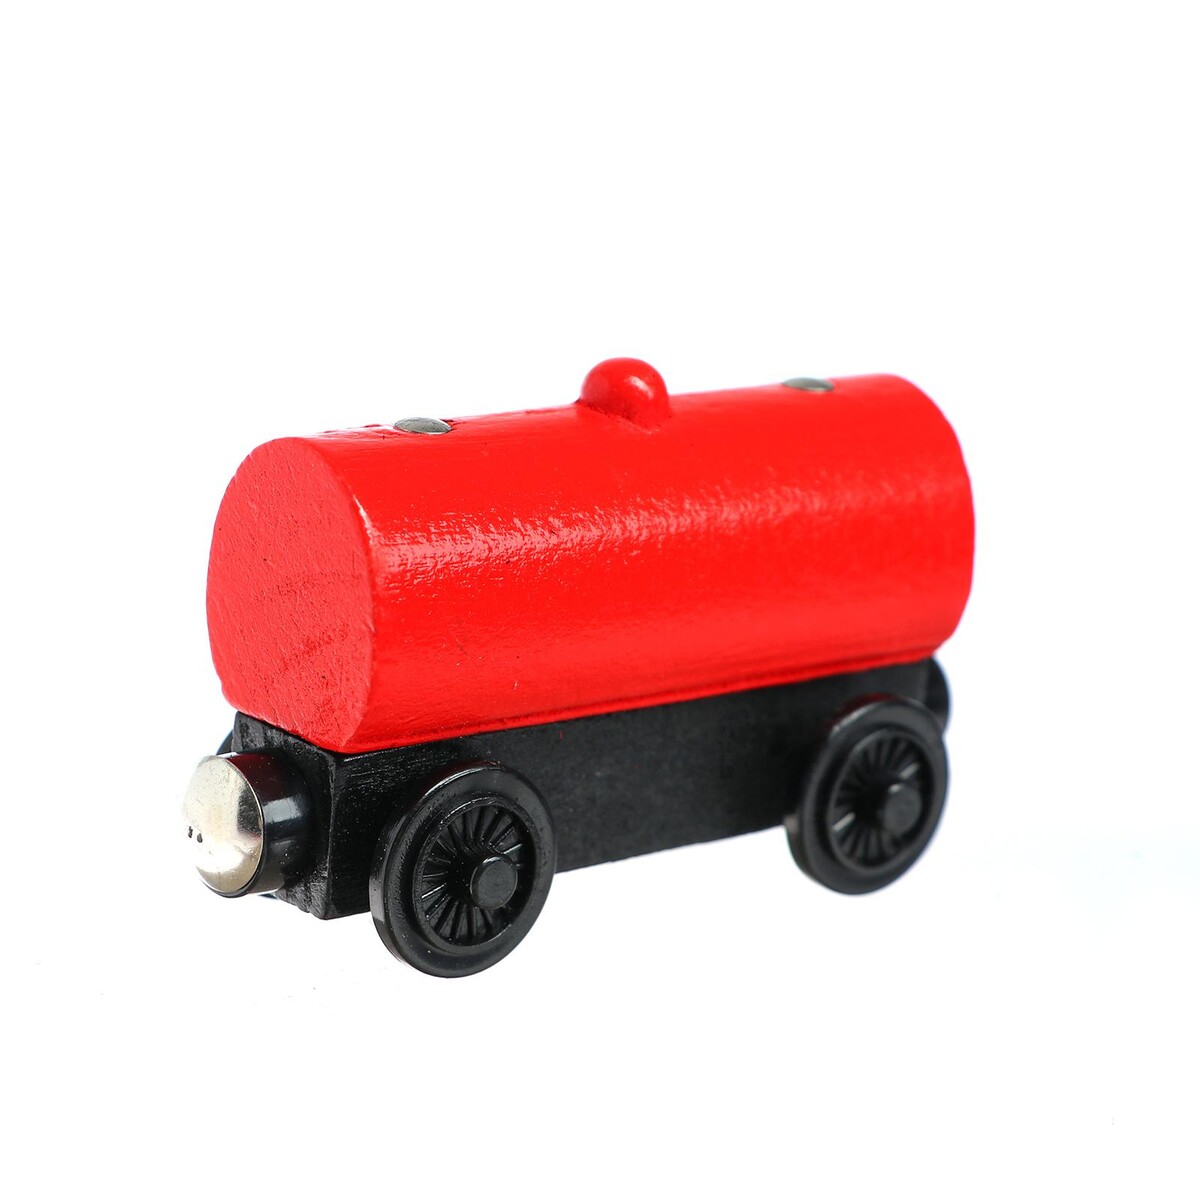 Детский вагончик для железной дороги 3,4×8,5×5,1 см детский вагончик для железной дороги 3 4×8 5×5 1 см